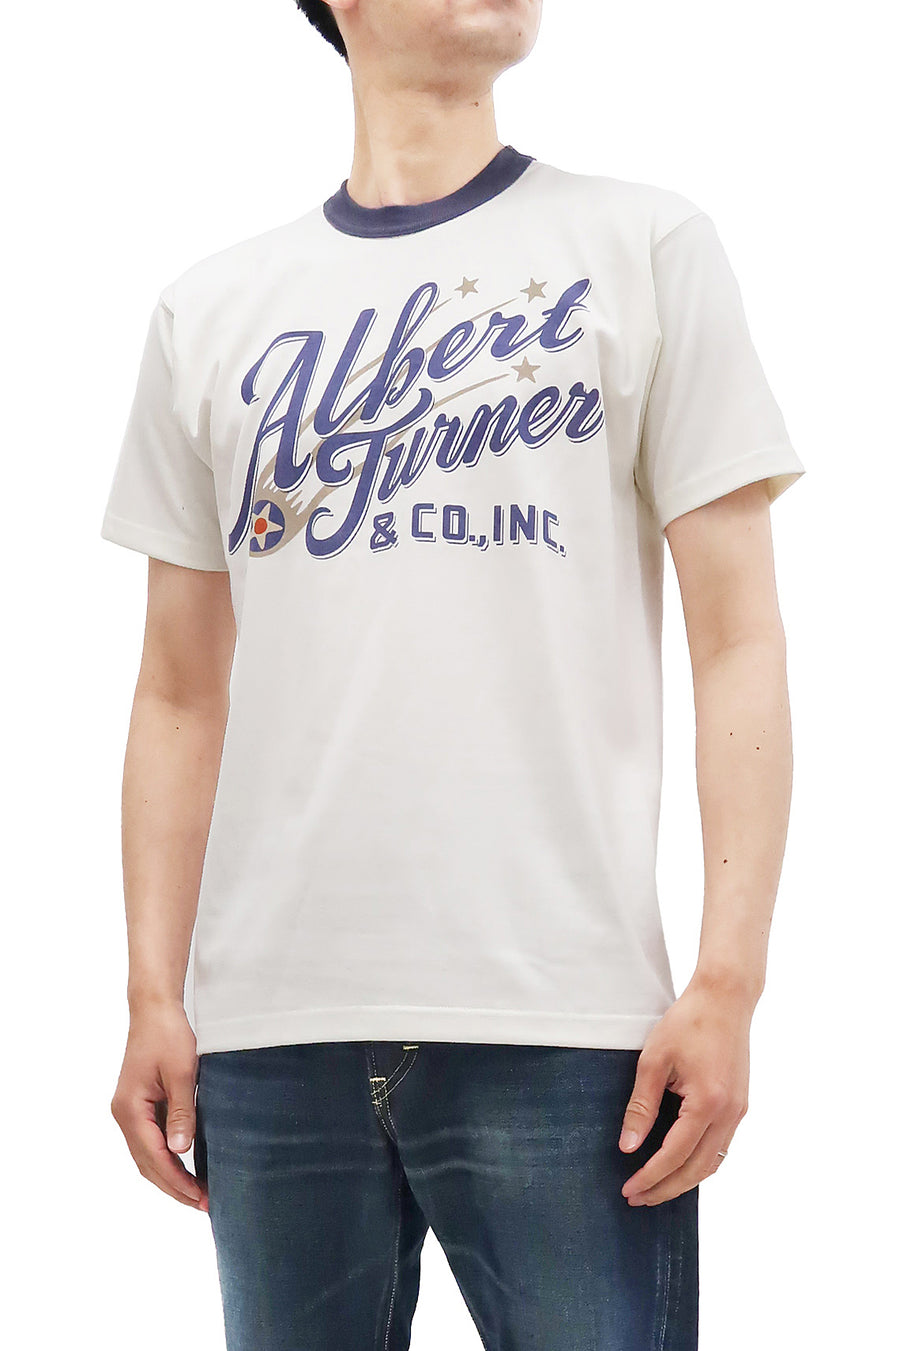 TOYS McCOY T-Shirt Men's The Albert Turner & Co. Logo Military Short Sleeve Tee TMC2242 011 Off-White